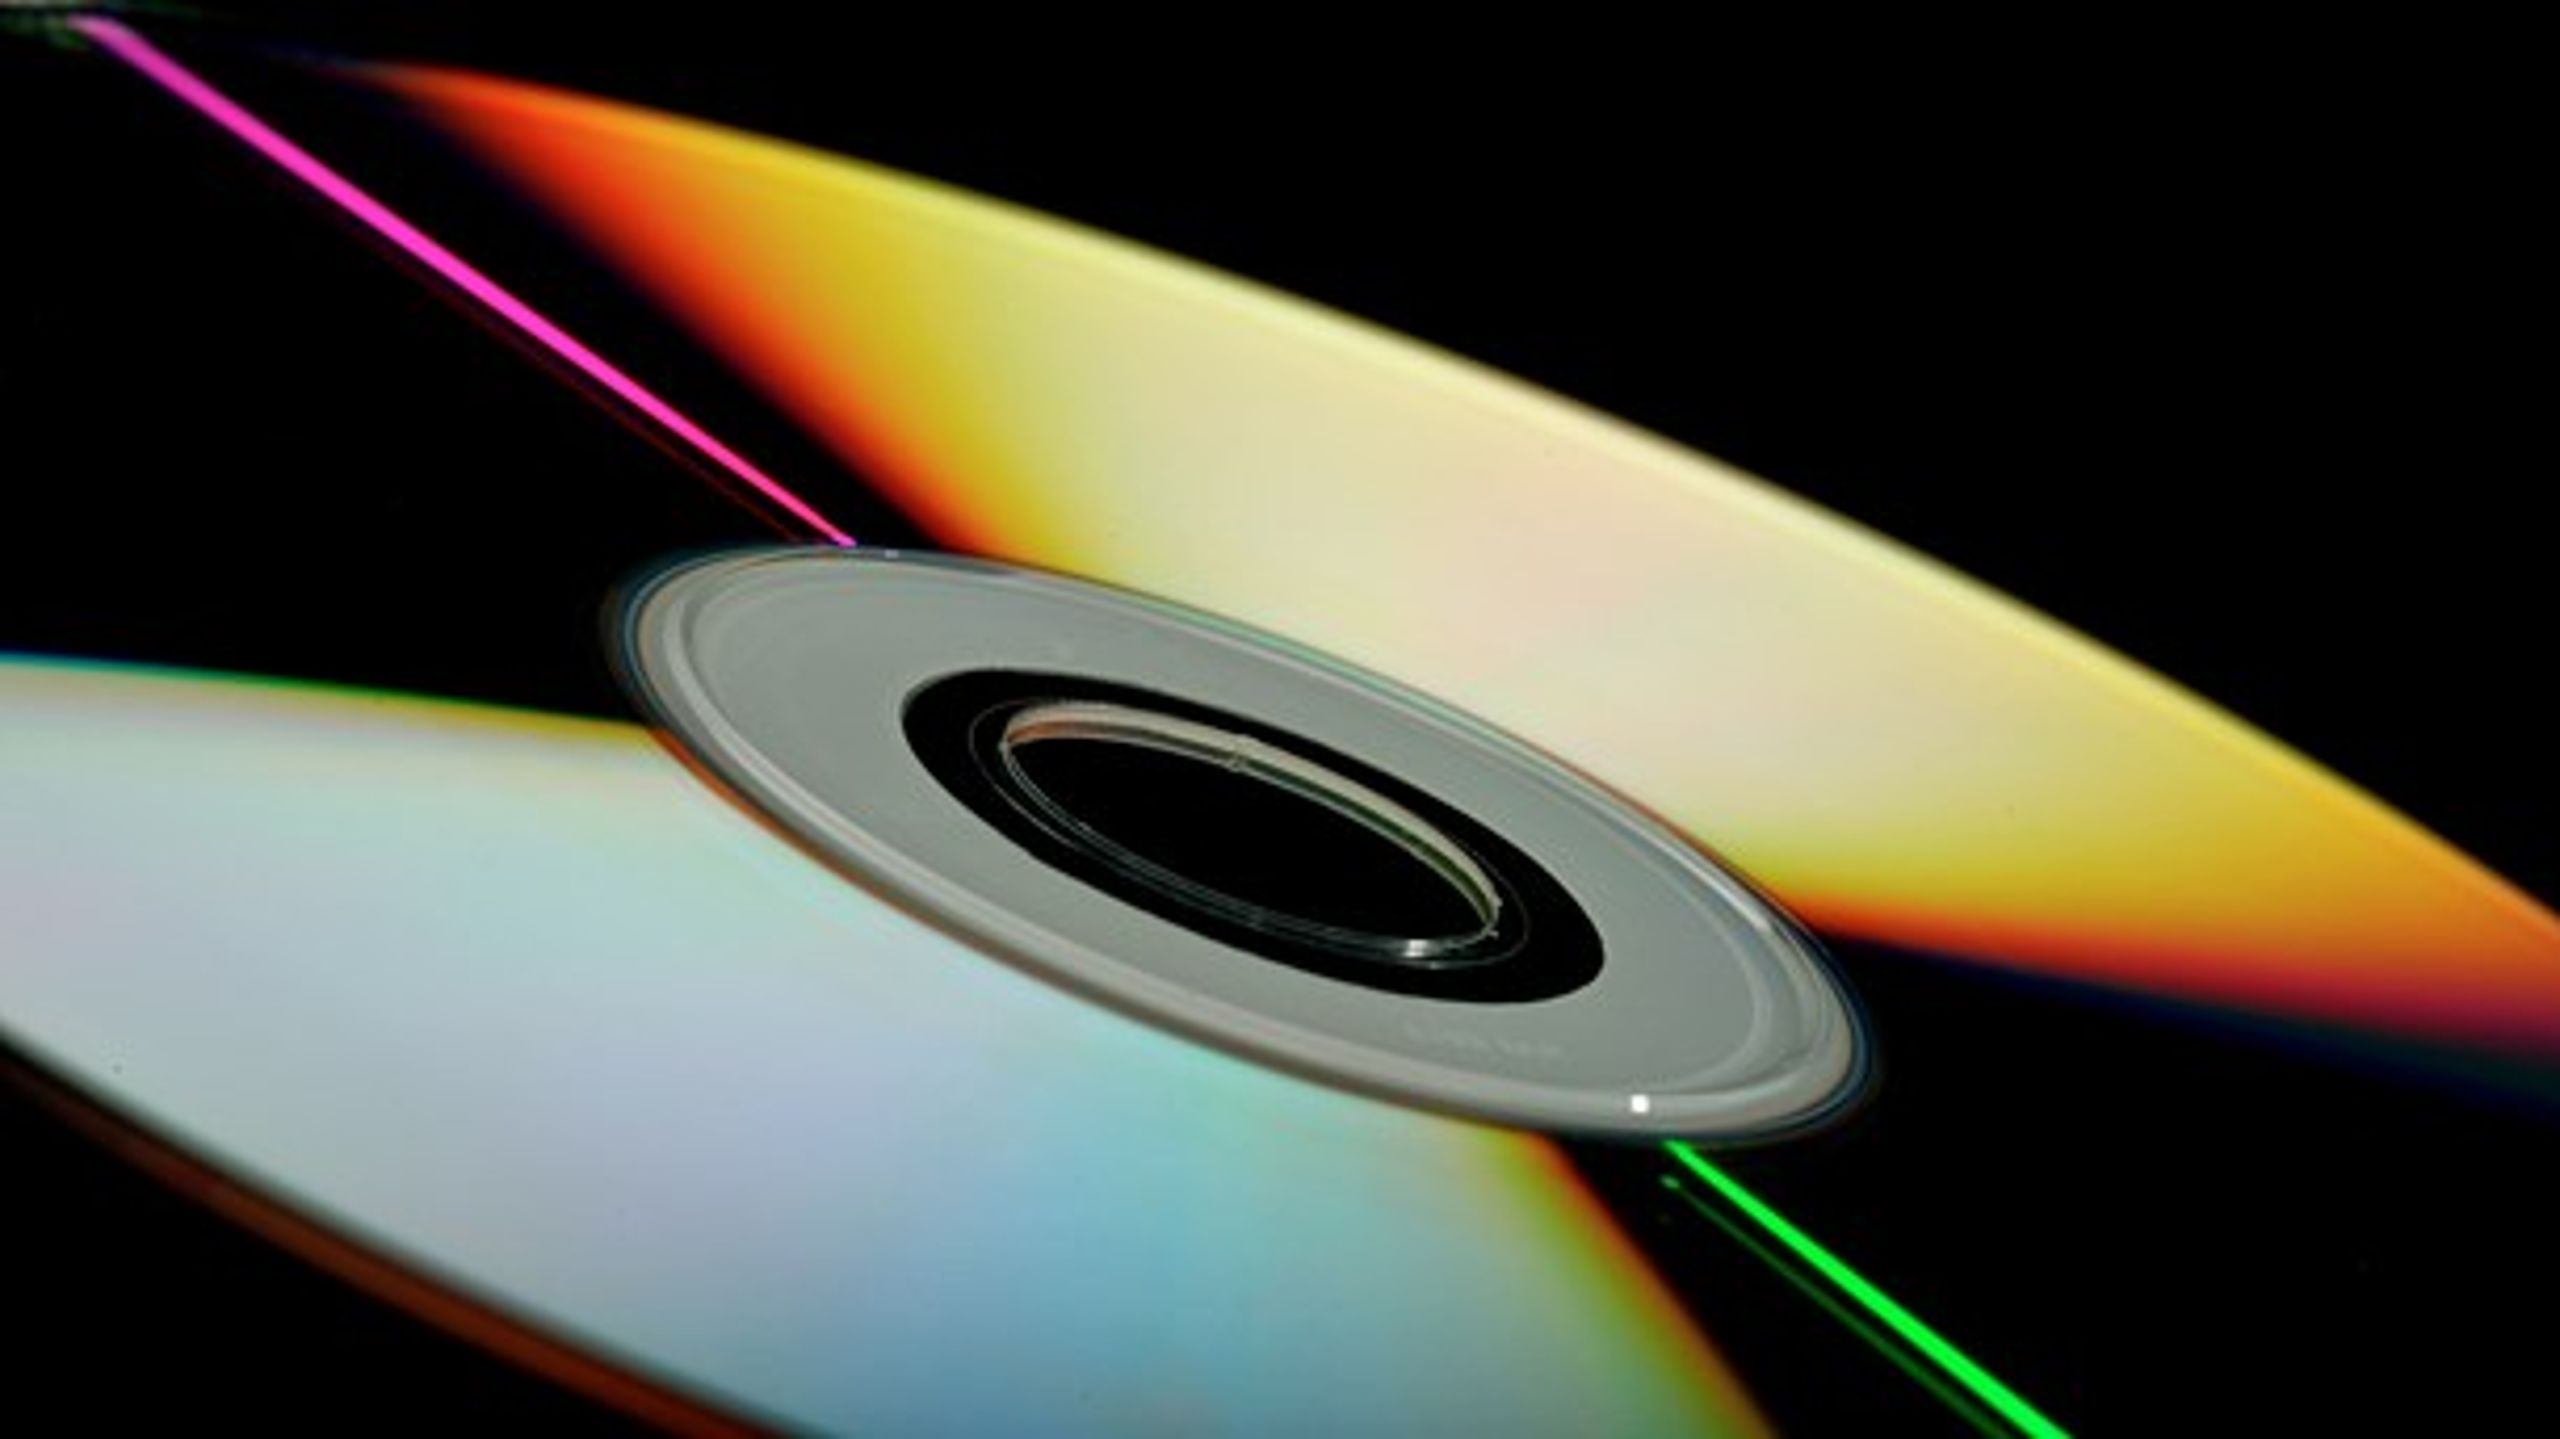 Et blankt medie kan&nbsp;være en tom CD til at kopiere musik på.&nbsp;